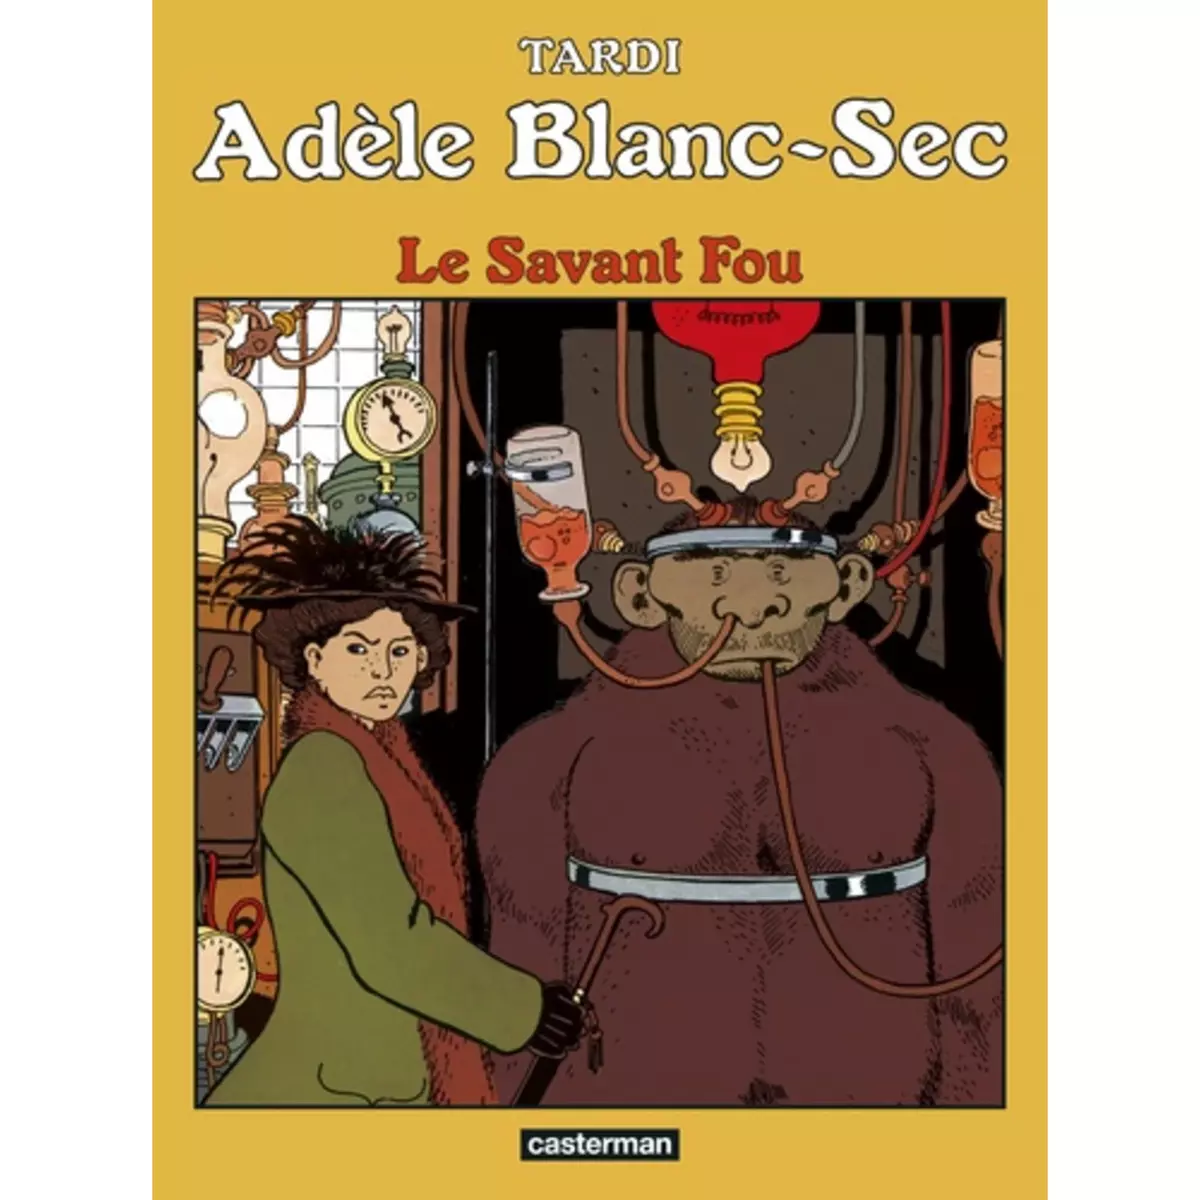  ADELE BLANC-SEC TOME 3 : LE SAVANT FOU, Tardi